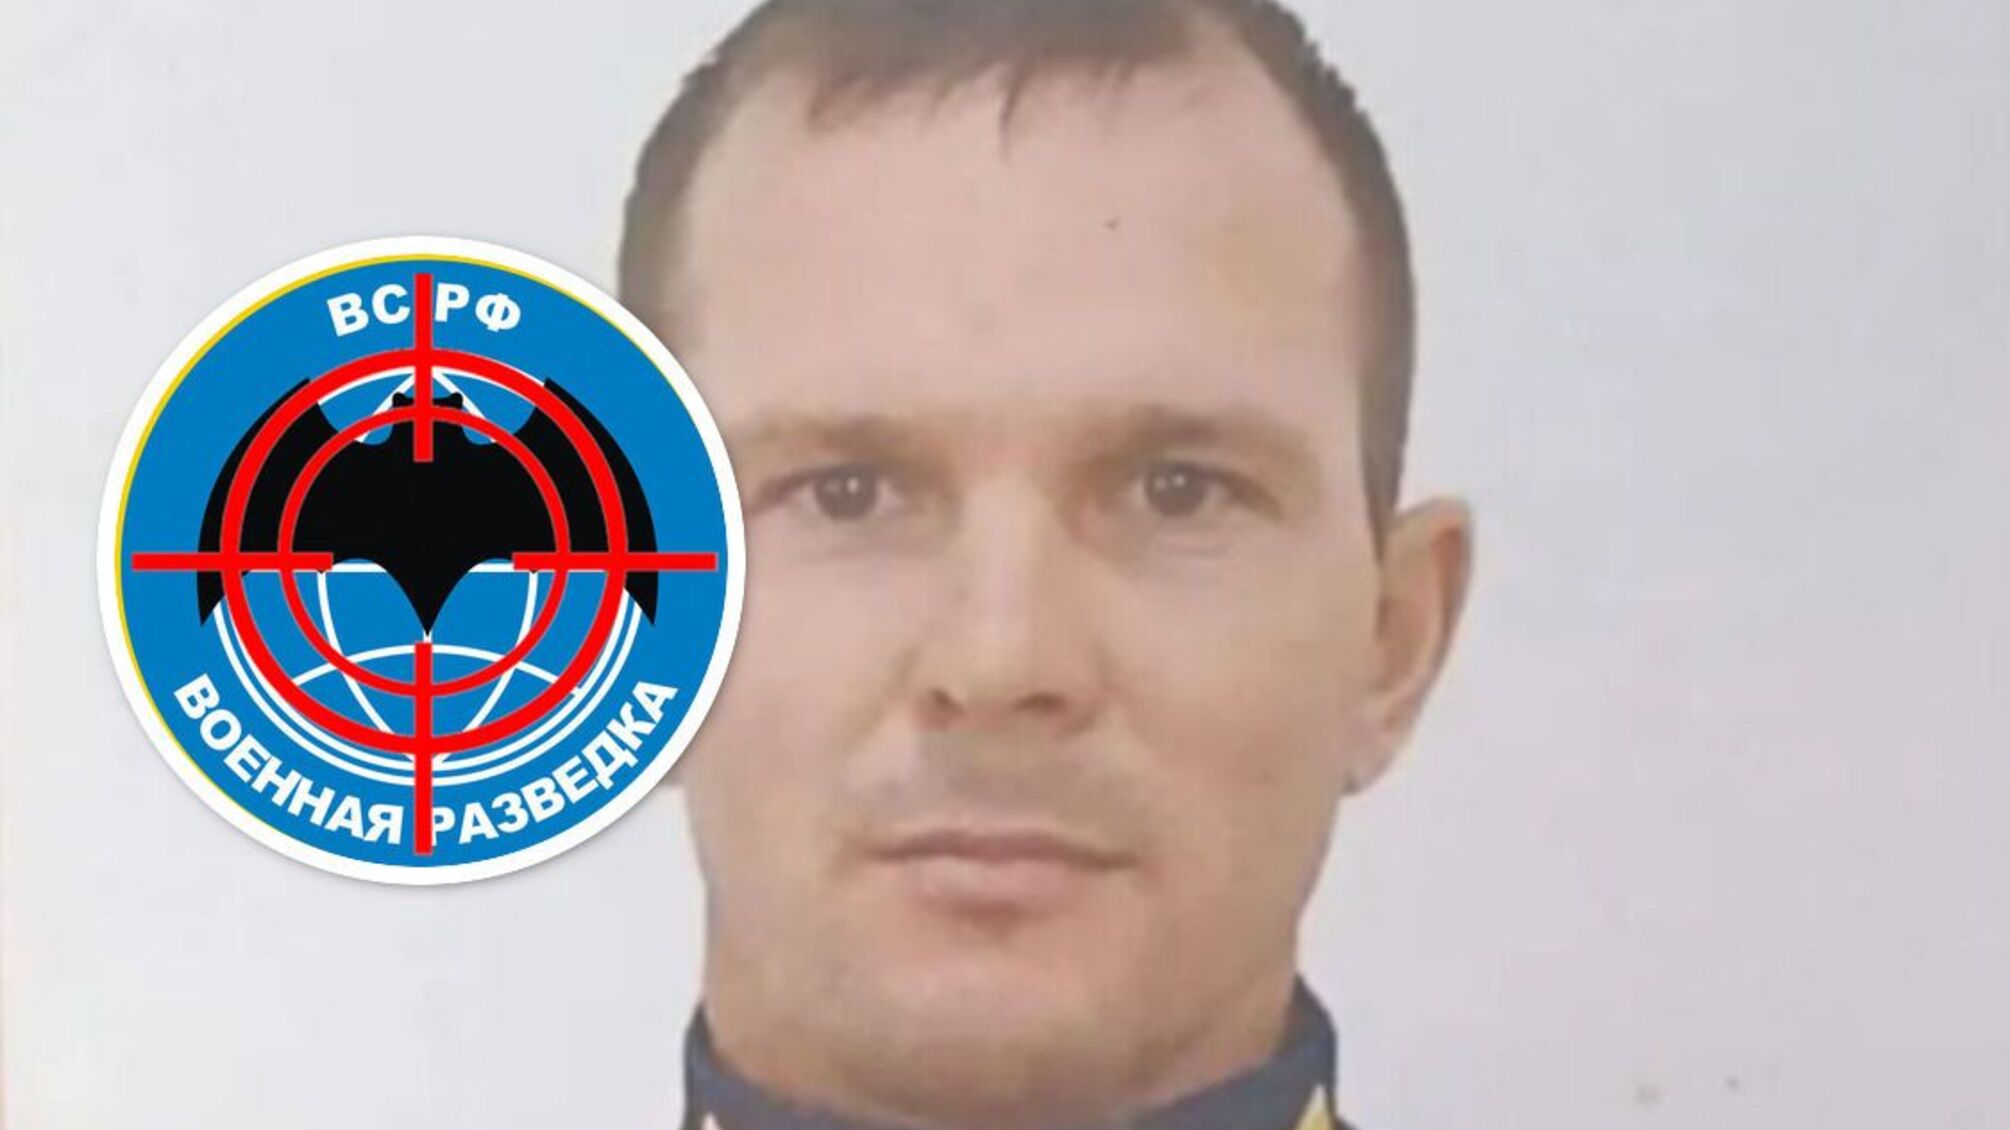 'Шаг доброй воли' сделал спецназовец ГРУ армии рф Павел Штепа: Украина его 'демилитаризировала'